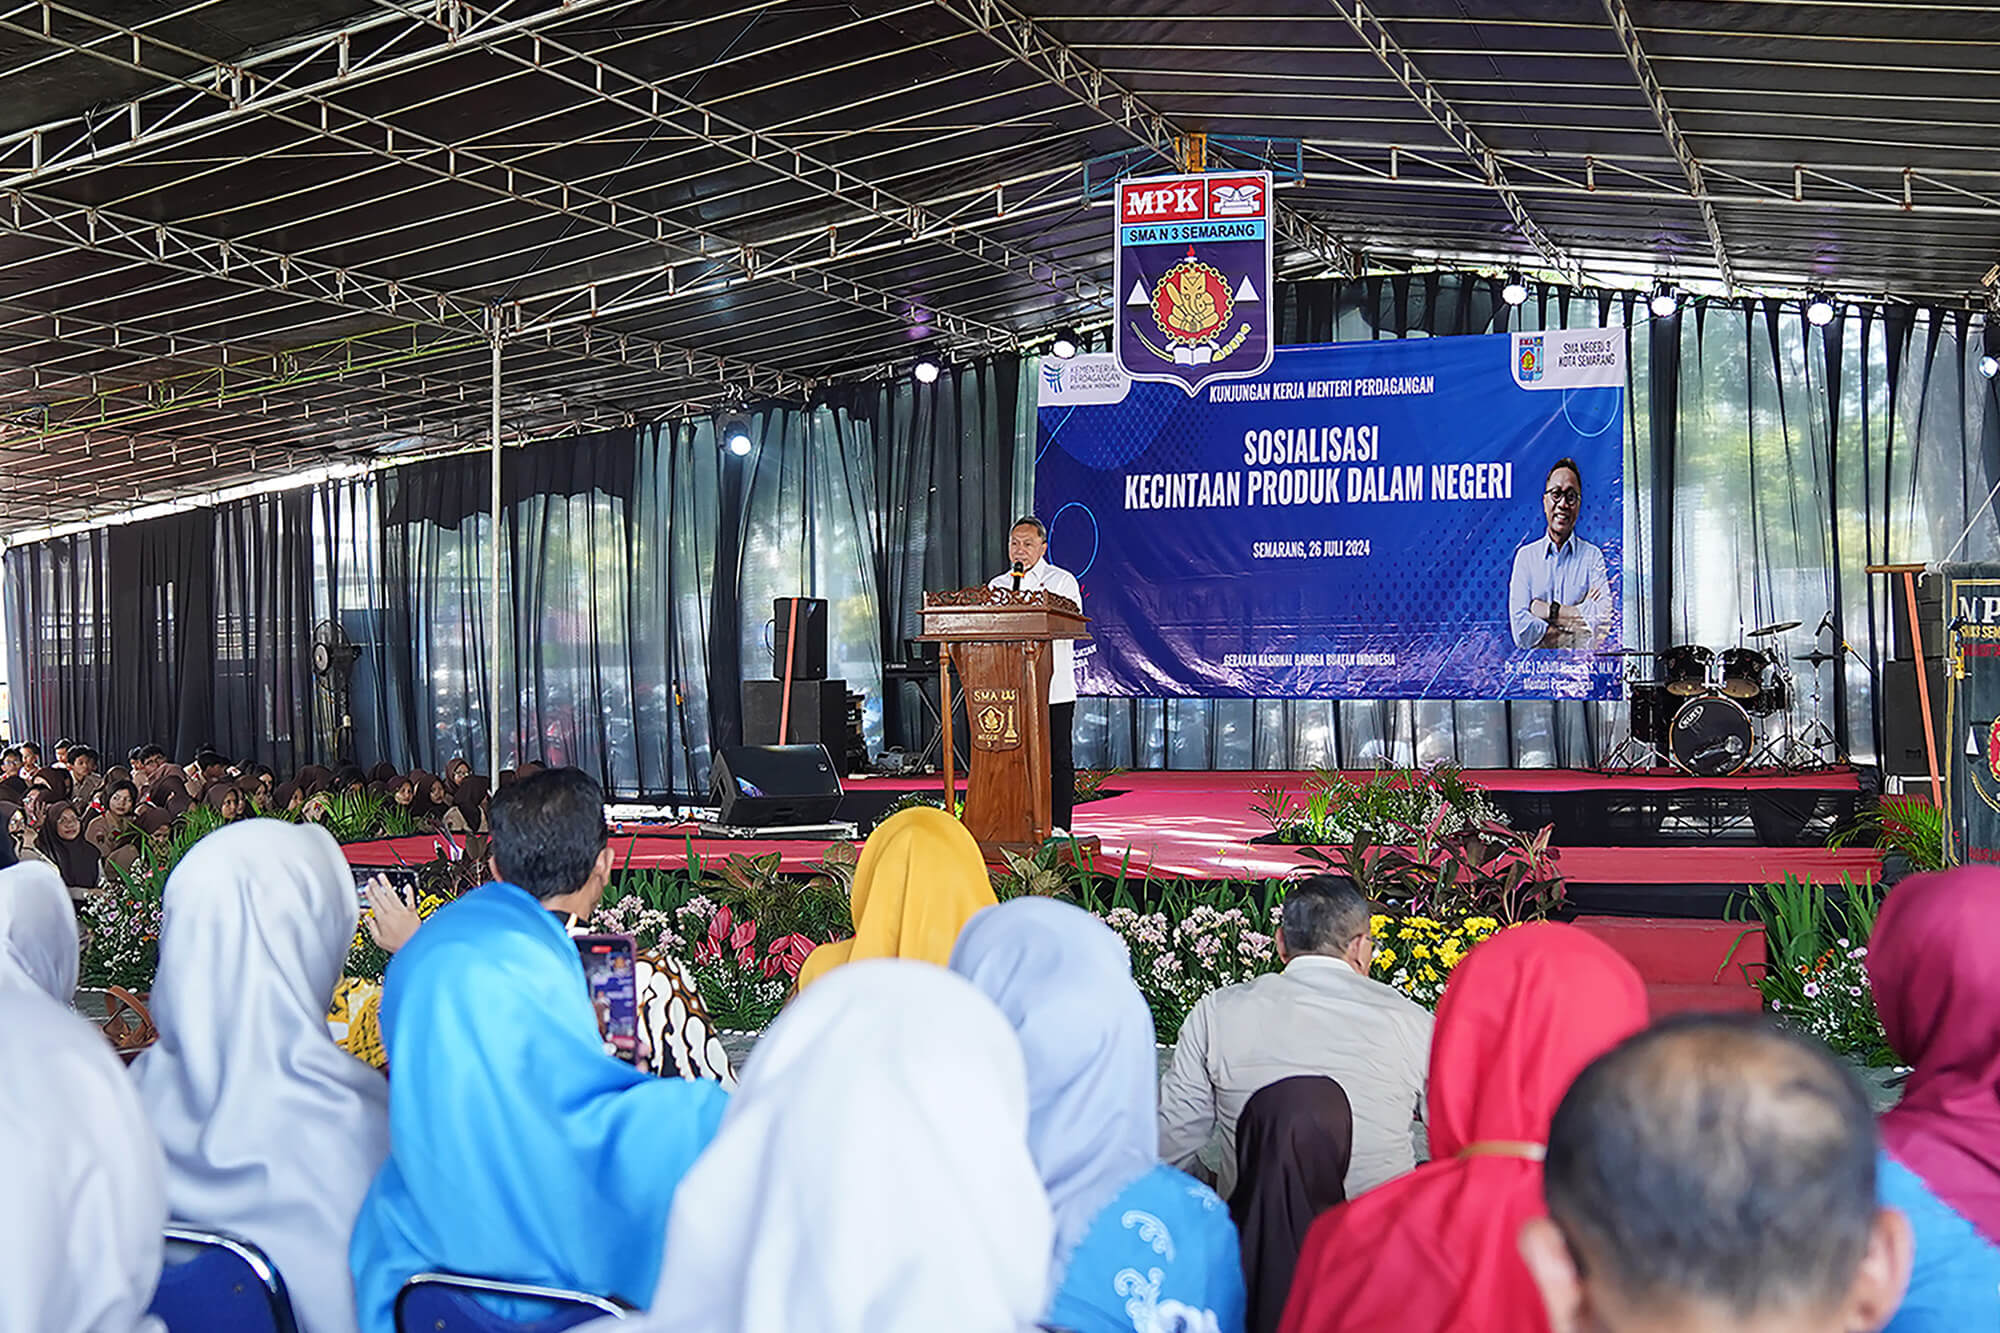 Sosialisasi Kecintaan Produk Dalam Negeri di SMA Negeri 3 Semarang, Jawa Tengah